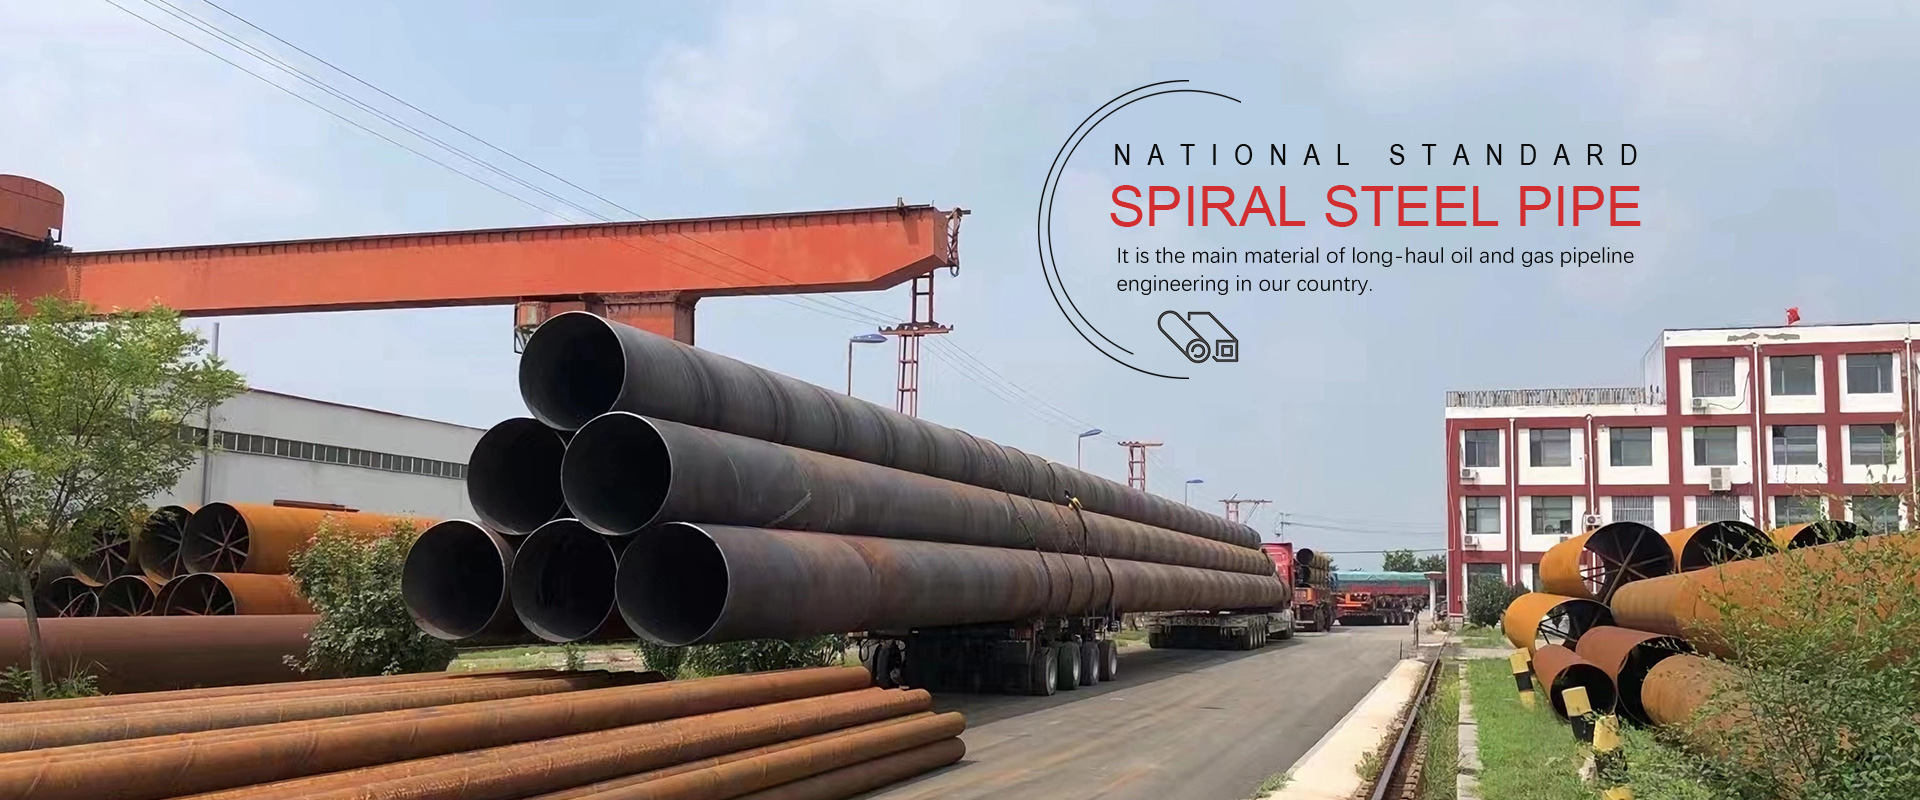 Produttori e fabbrica di tubi in acciaio a spirale